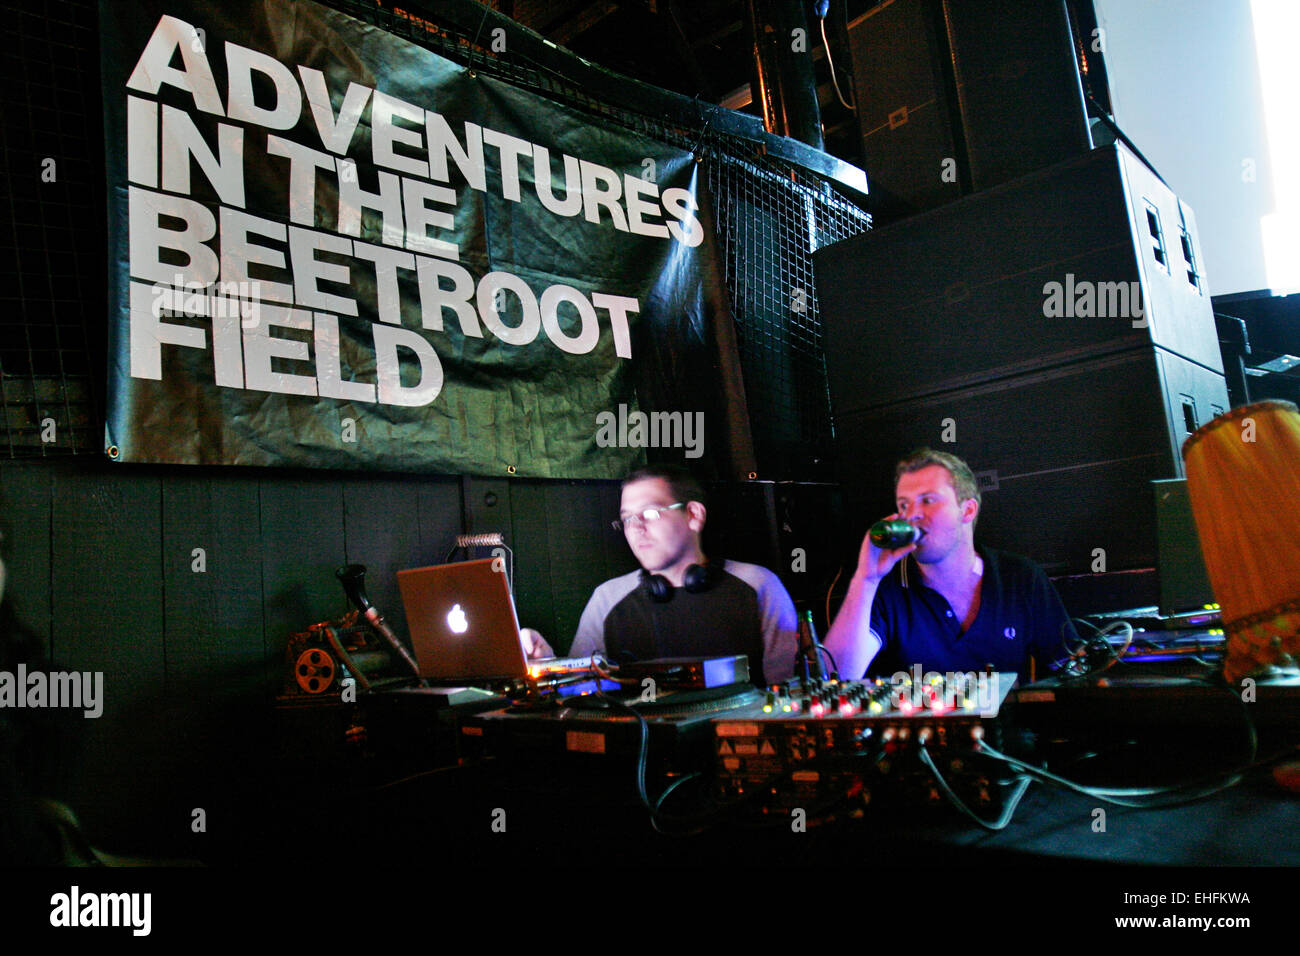 Warp DJs am Abenteuer im Feld rote Beete Kokos in Camden. Stockfoto